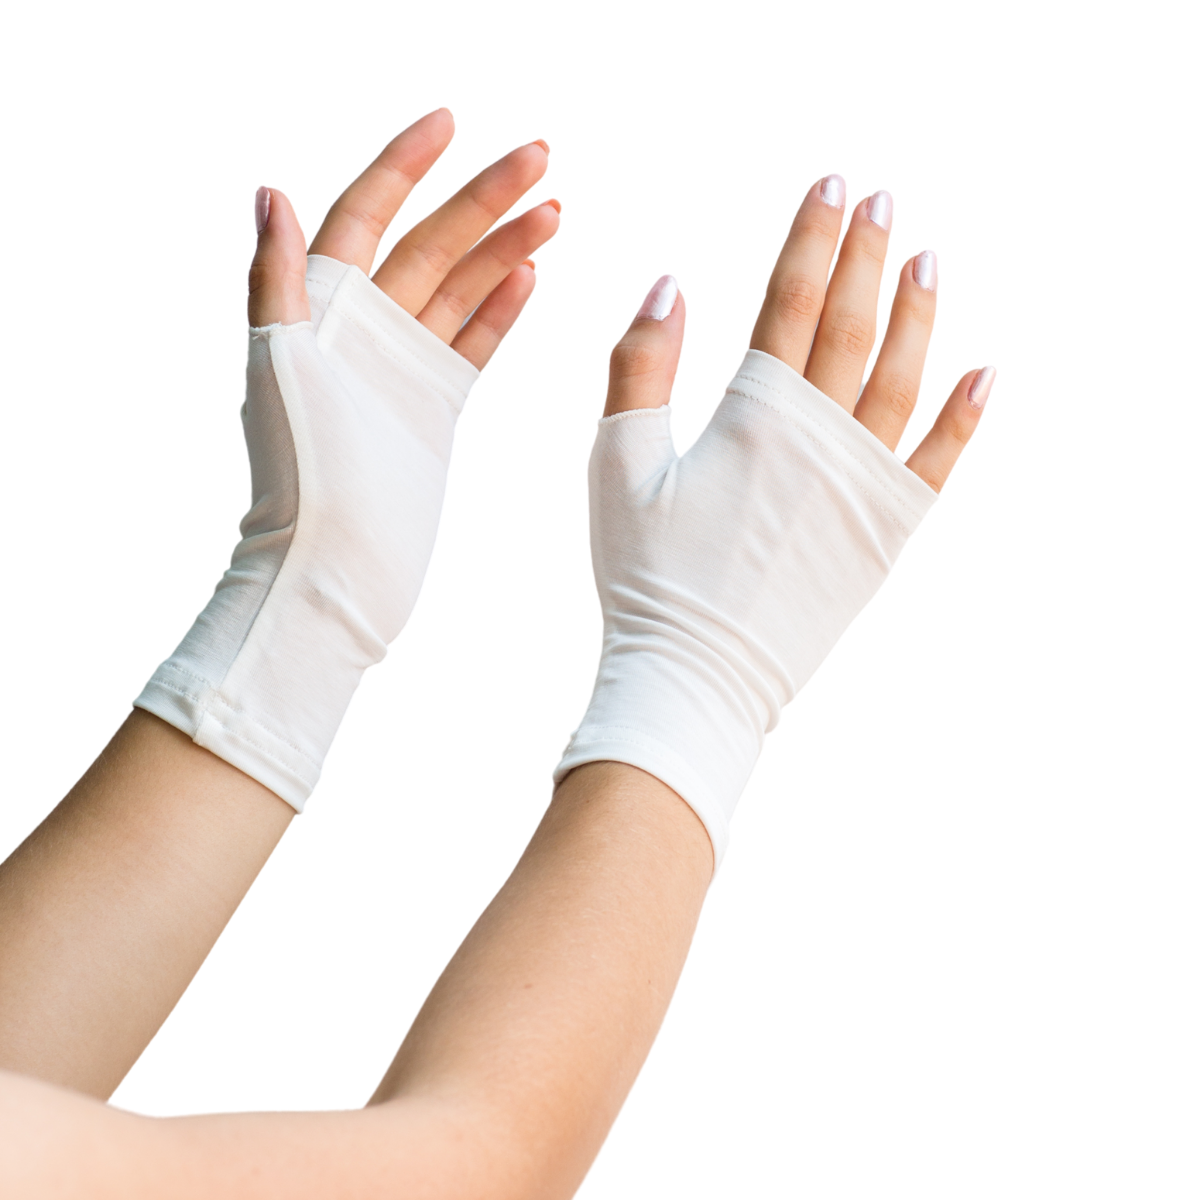 White fingerless gloves on a model's hands.